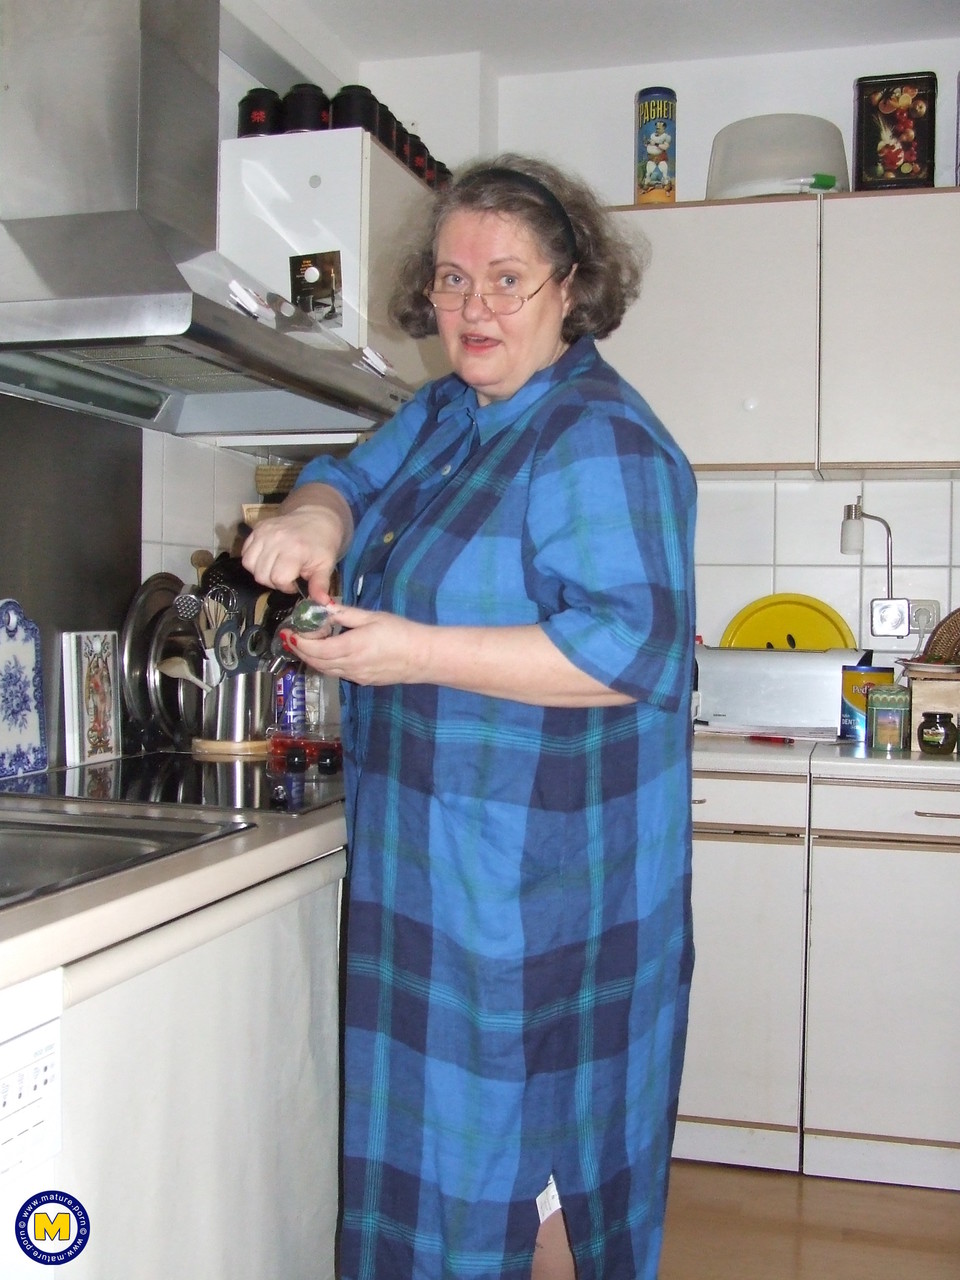 Fat mature housewife Birgid masturbates with a cucumber in the kitchen porno foto #423883217 | Mature NL Pics, Birgid, Granny, mobiele porno